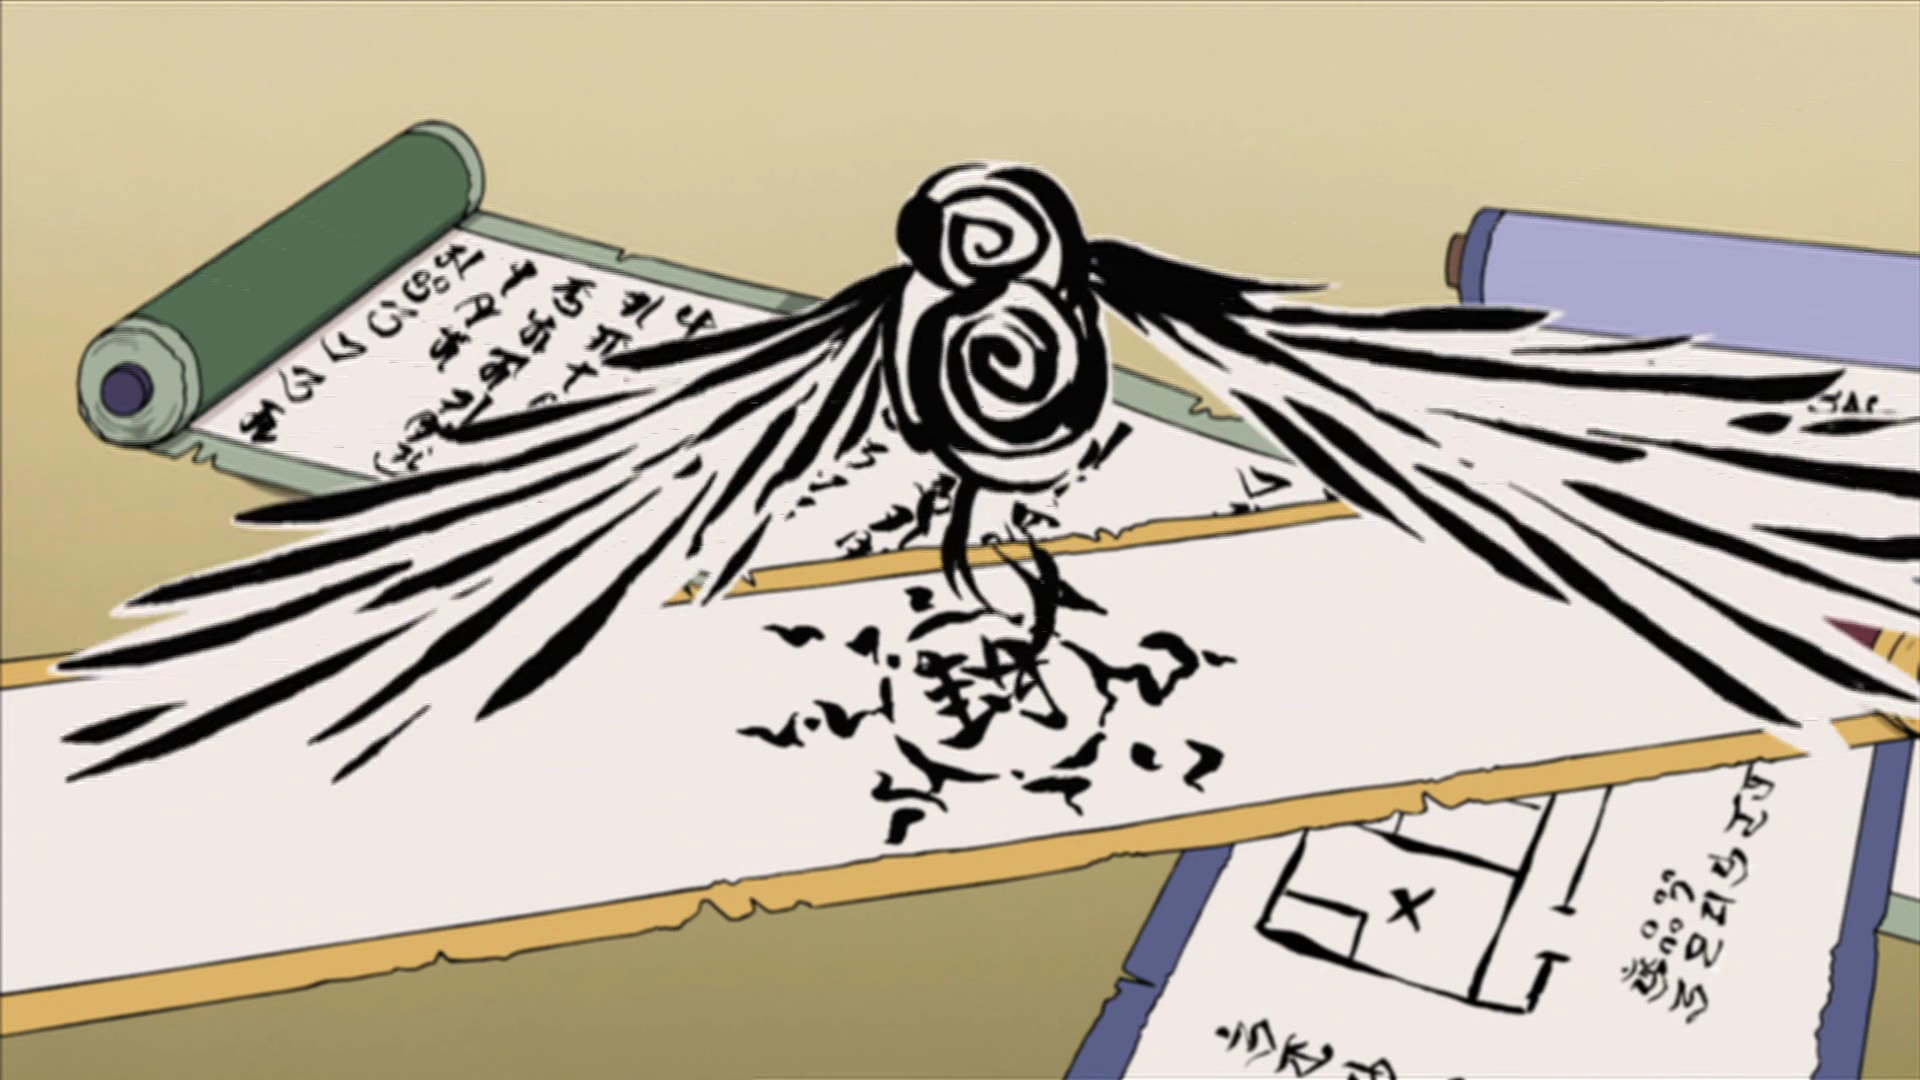 Óbito Uchiha drawing  Tatuagens de anime, Desenho de anime, Desenhos  detalhados